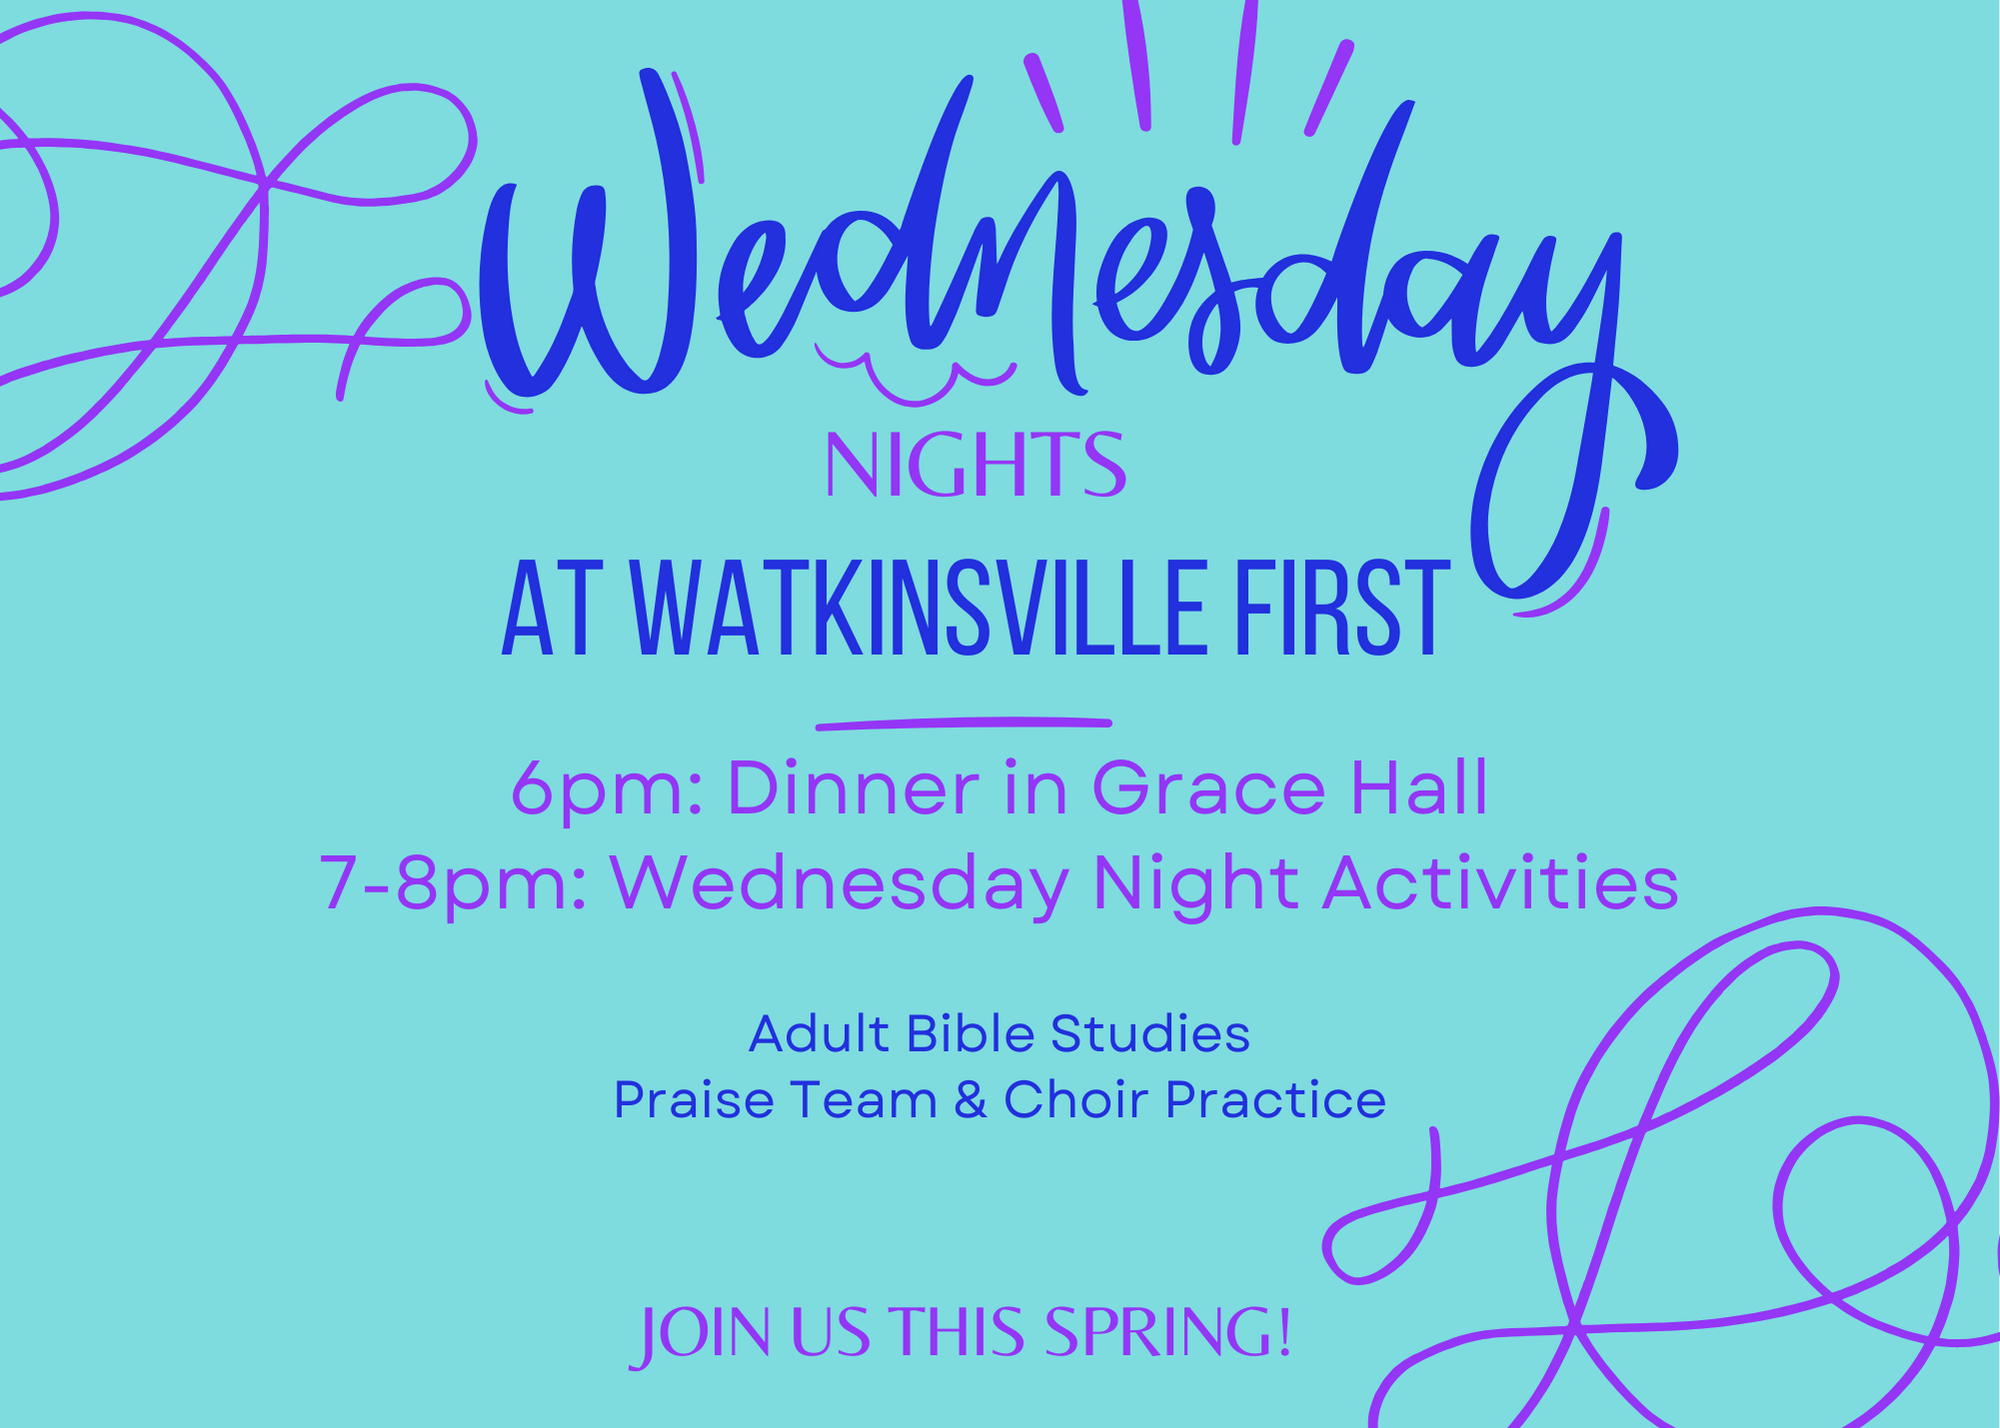 Wednesday Nights at Watkinsville First